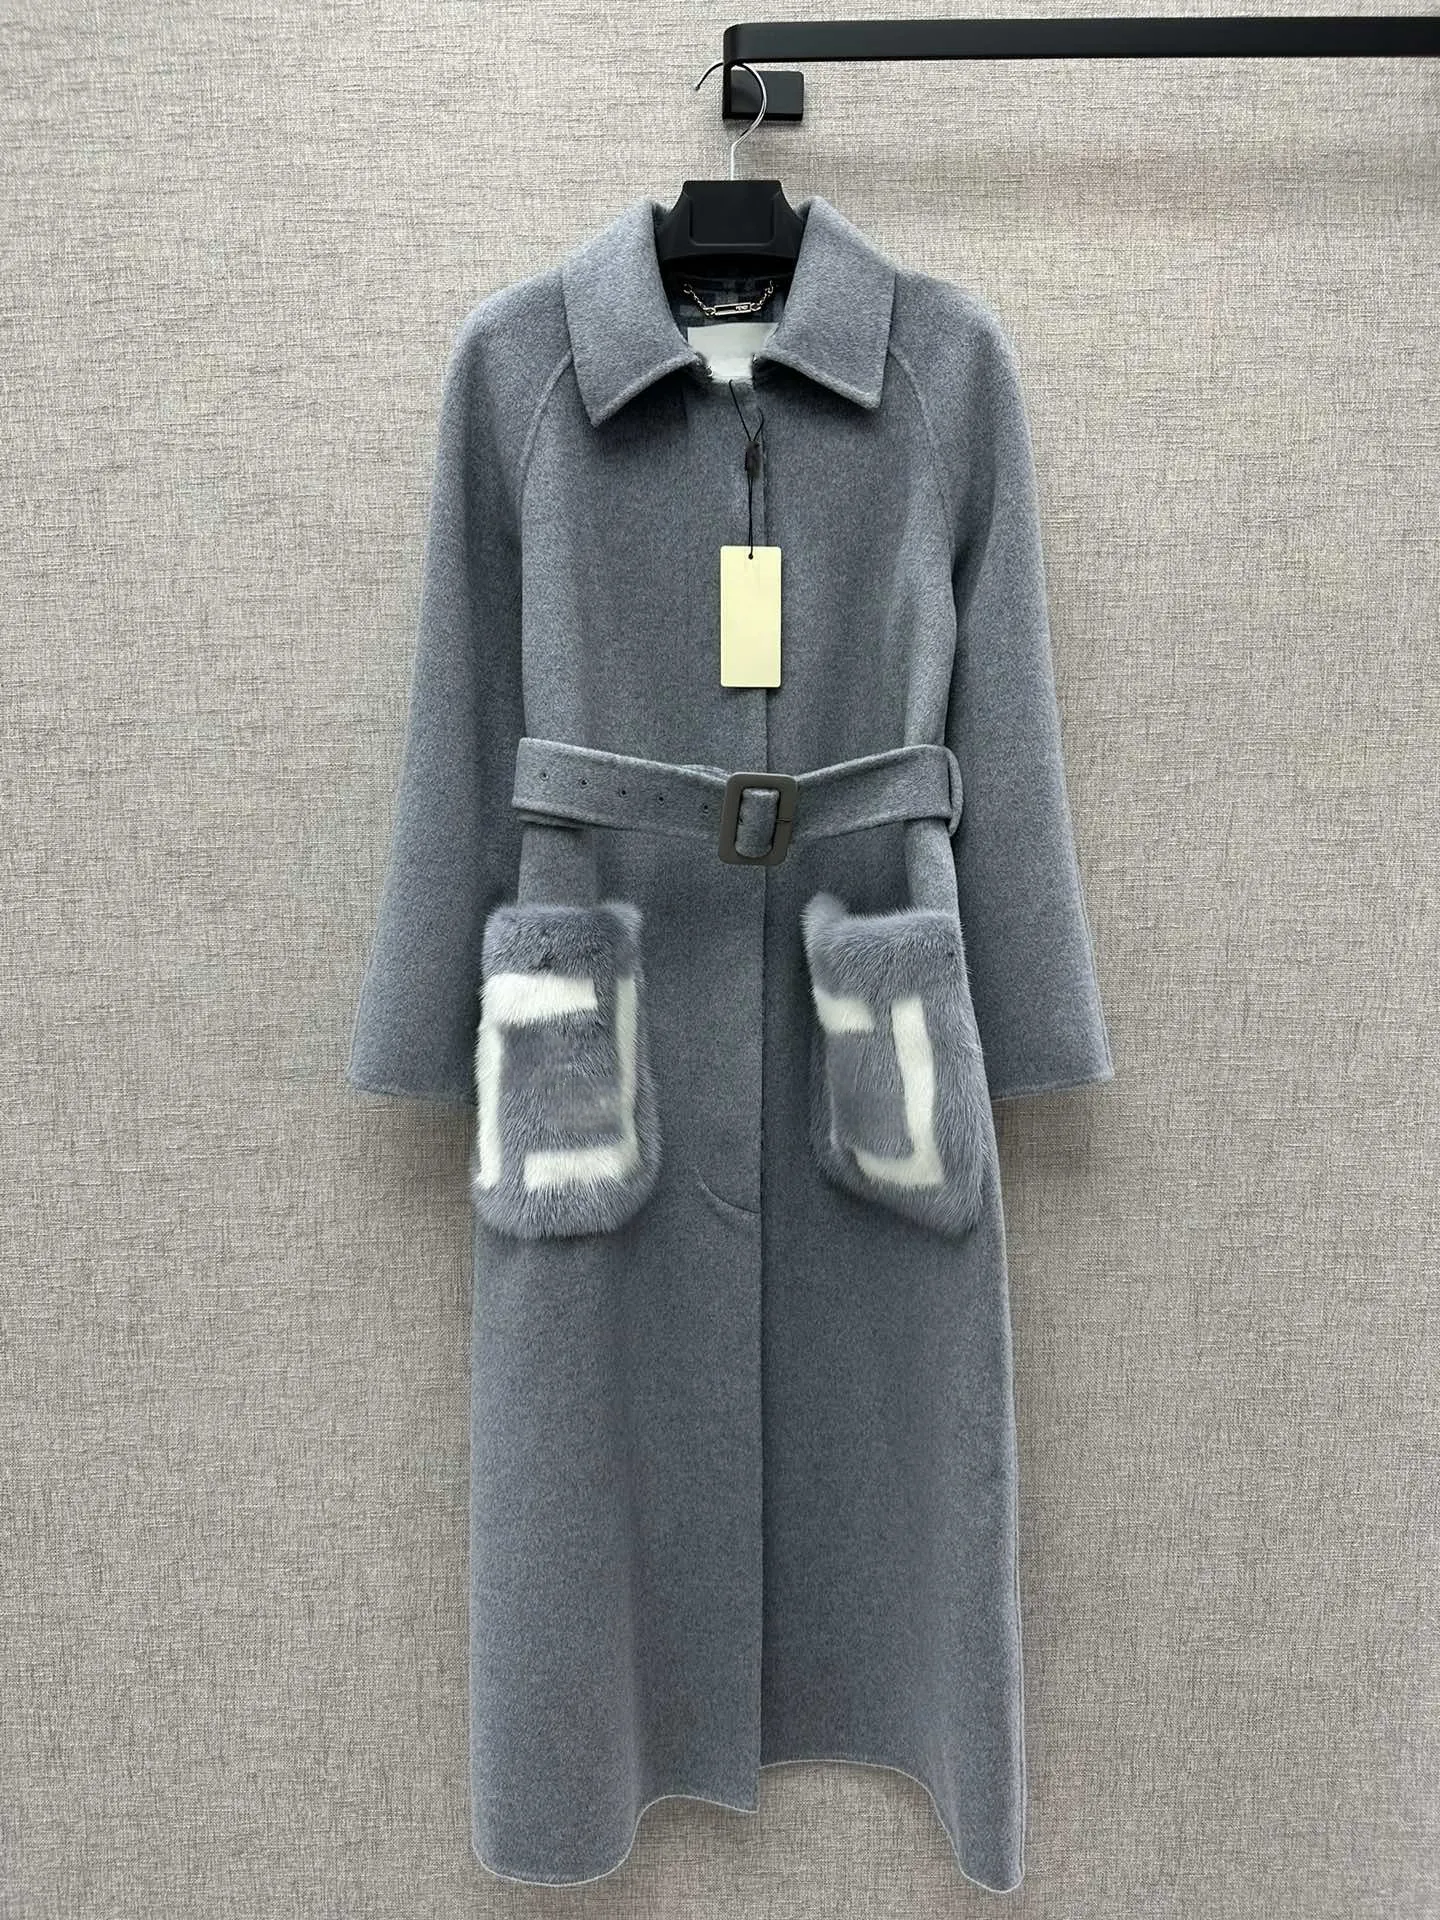 트렌치 유럽 여성 클래식 코트 오리지널 커스텀 밍크 포켓 디자인 수제 코트